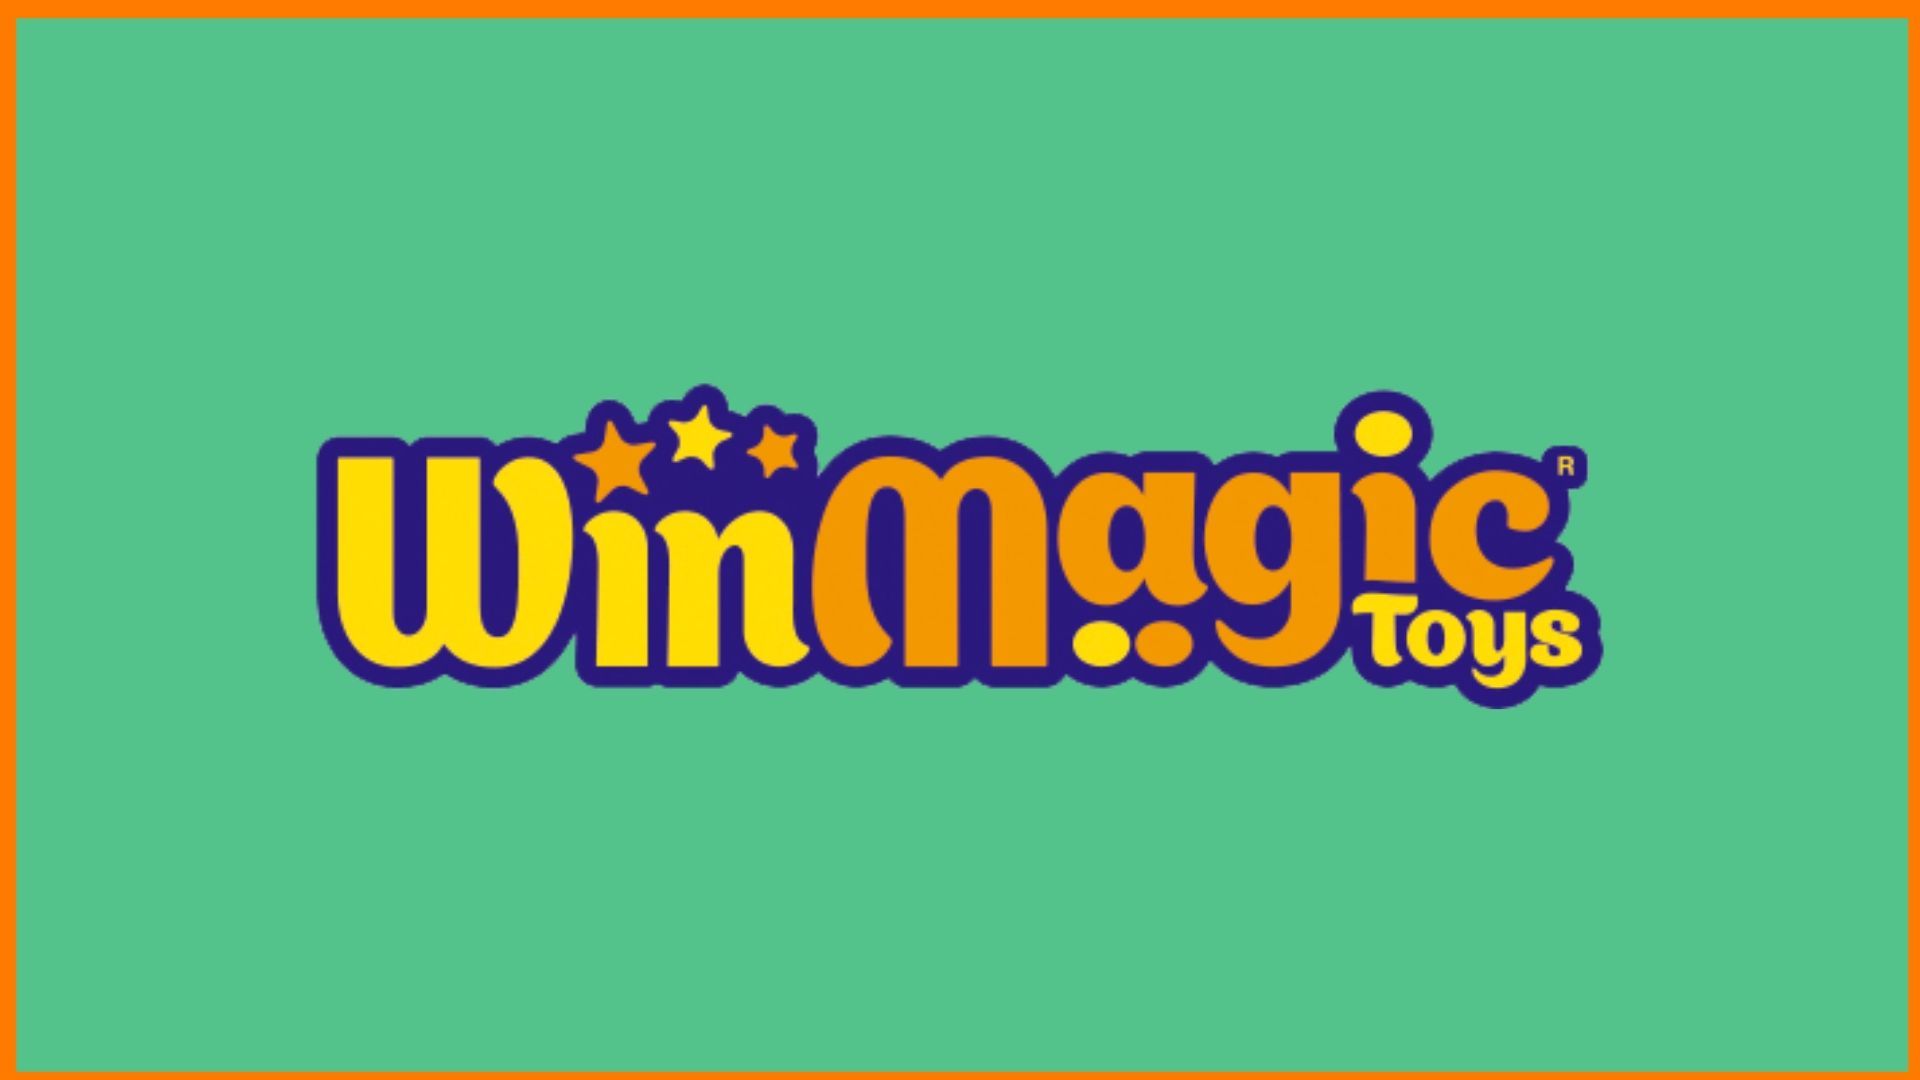 WinMagic Toys - Energizing Childhood with Wonderful Toys!